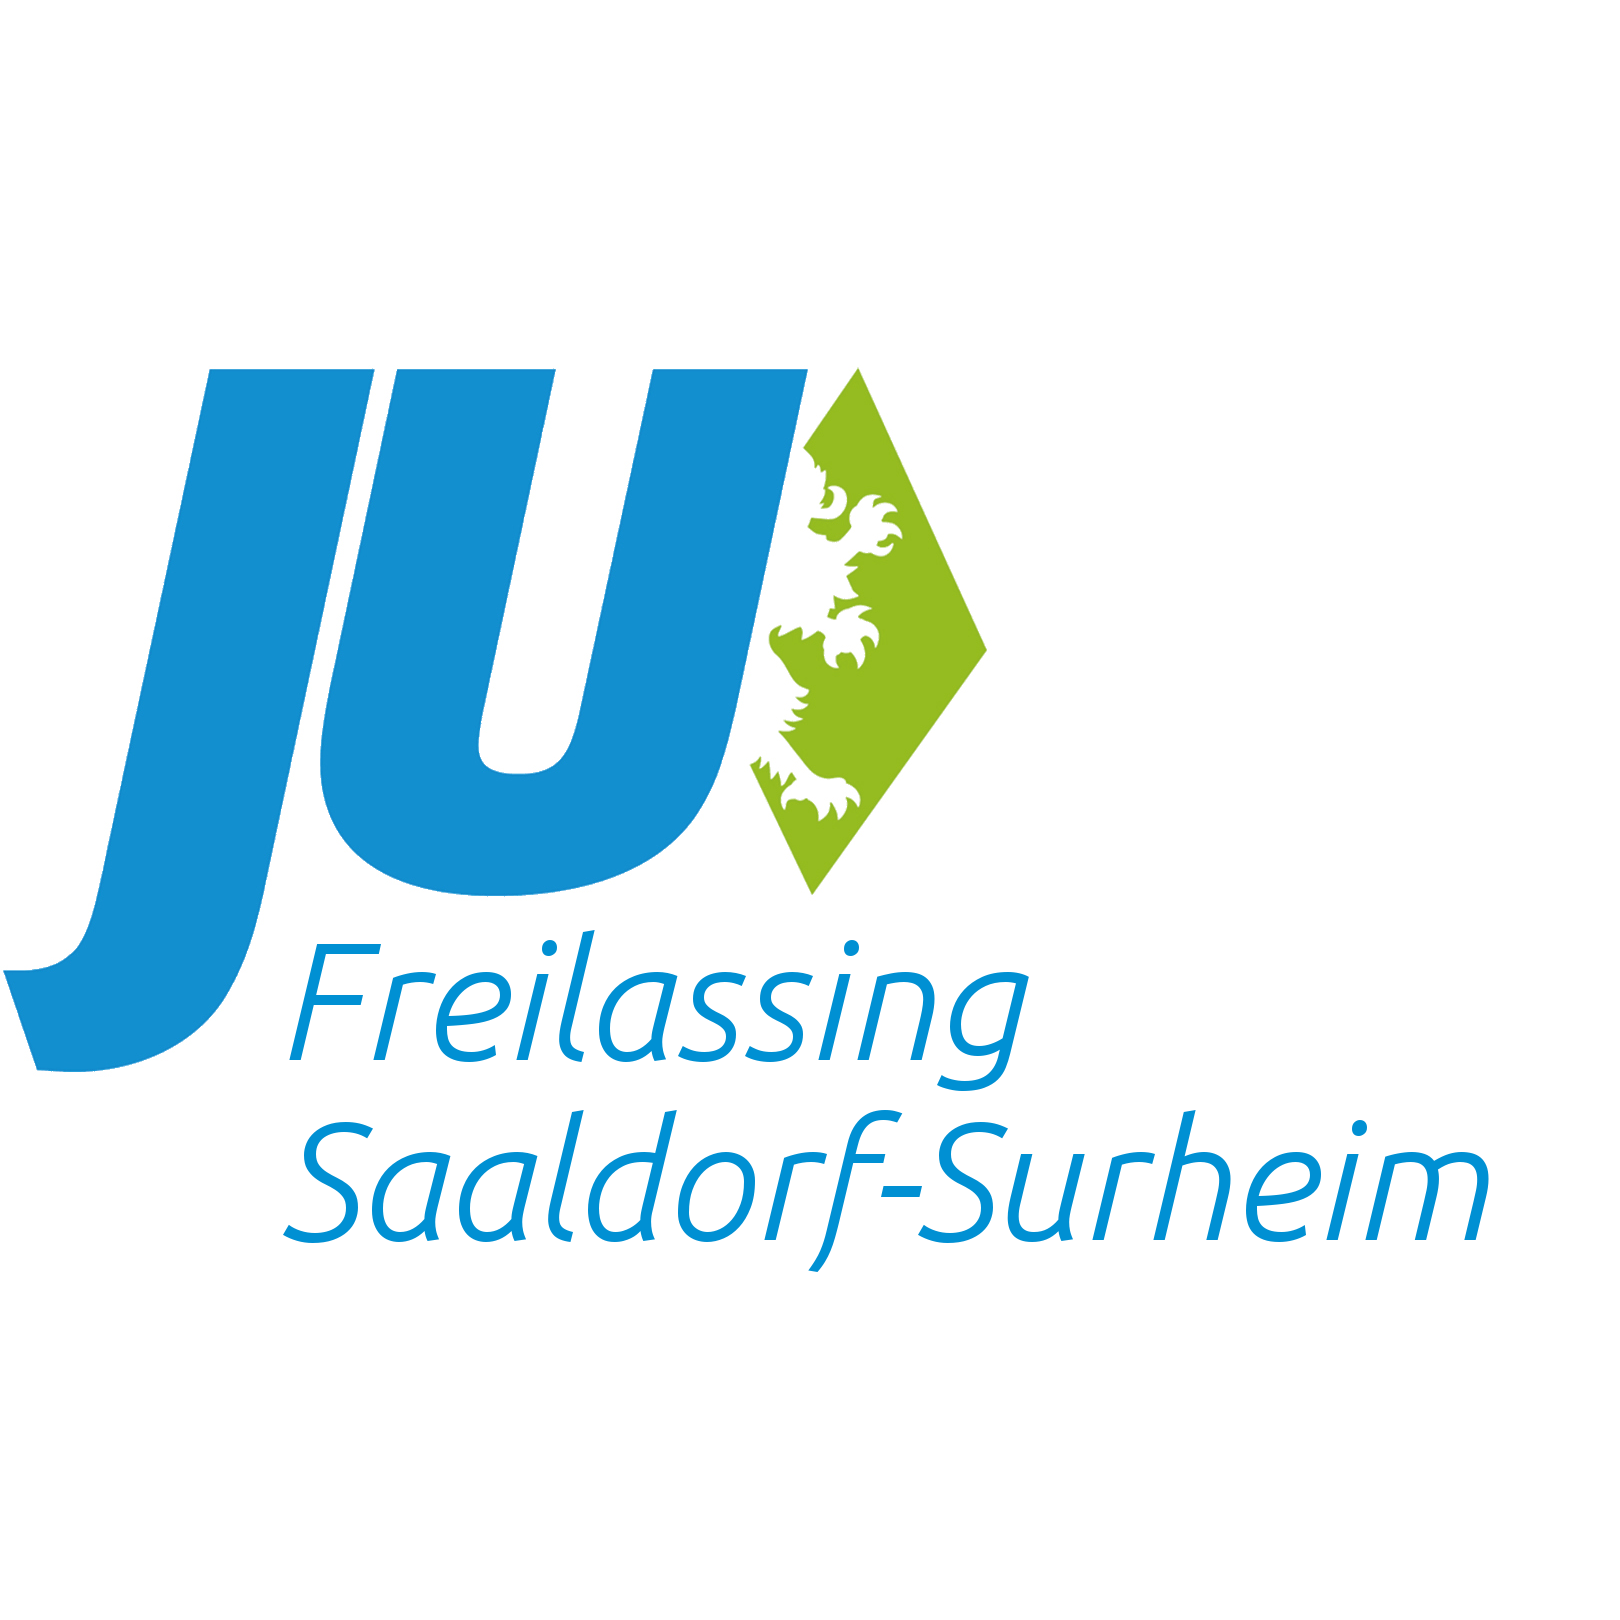 logoovfreilassingsaaldorf-surheimrechteckig.png